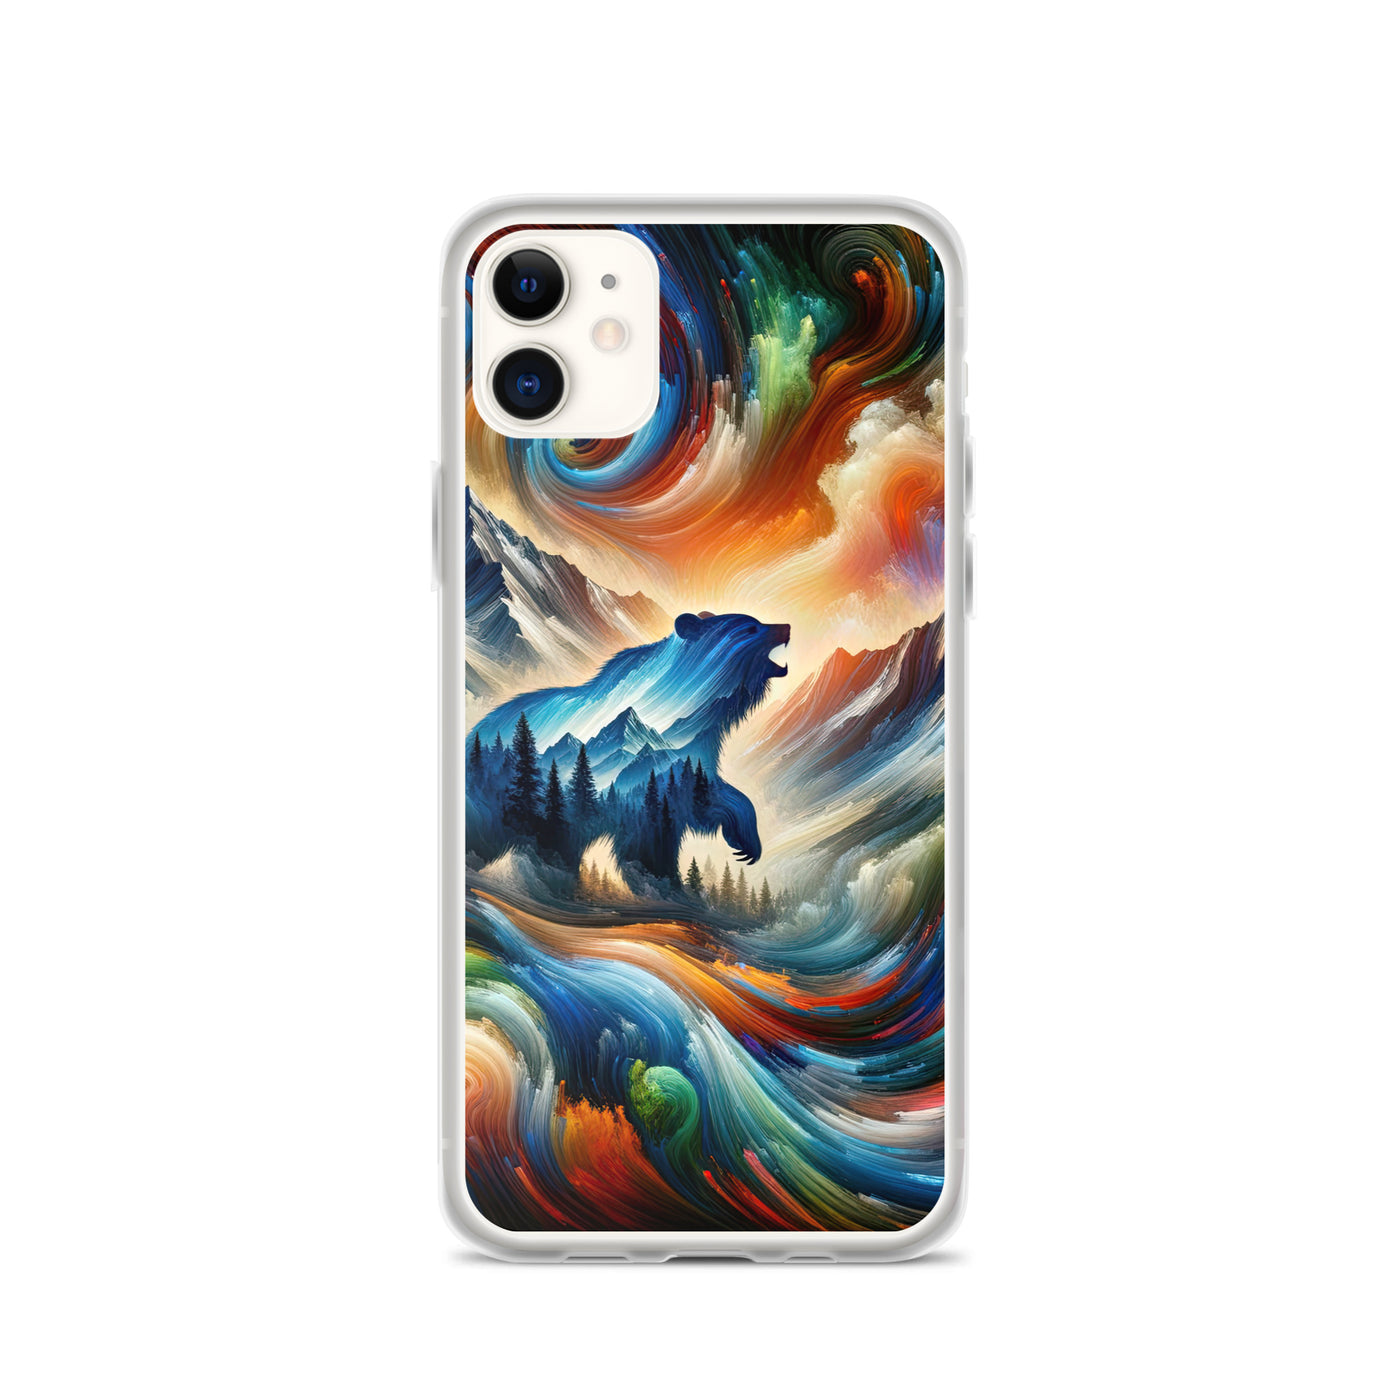 Lebendige Alpen und Bären Sillhouette über Berggipfel - Abstraktes Gemälde - iPhone Schutzhülle (durchsichtig) camping xxx yyy zzz iPhone 11